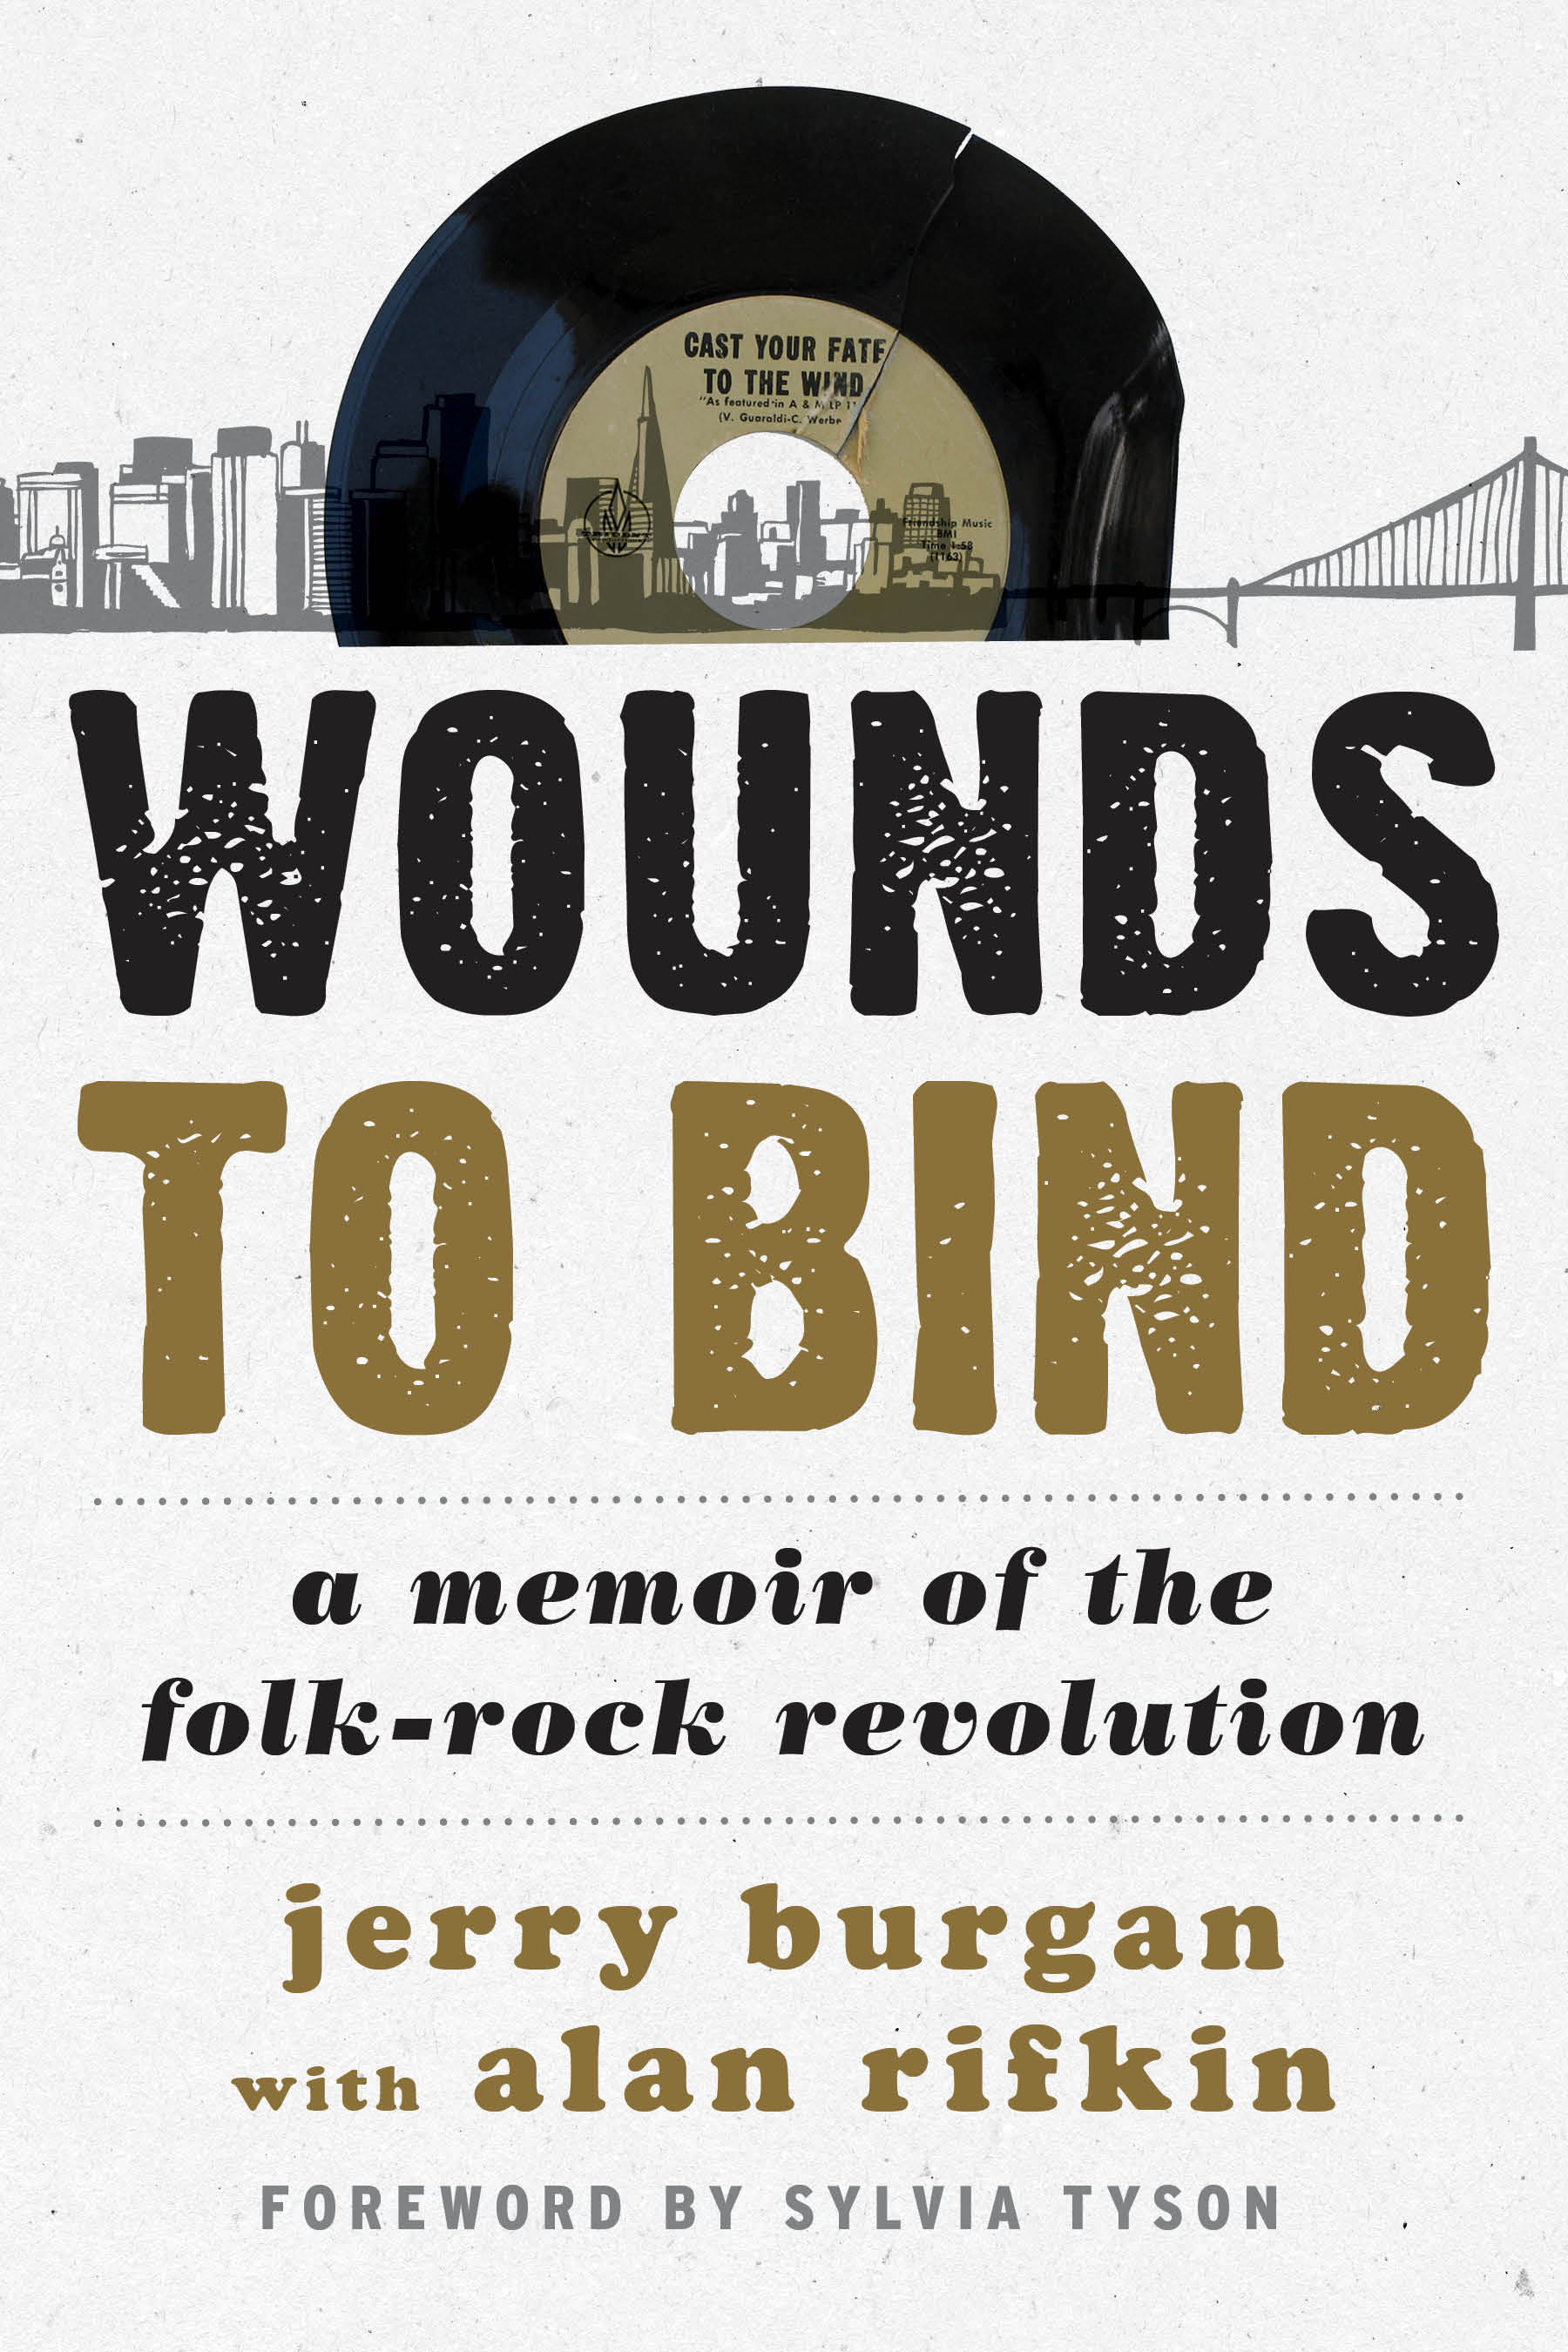 Wounds to Bind: A Memoir of the Folk-Rock Revolution